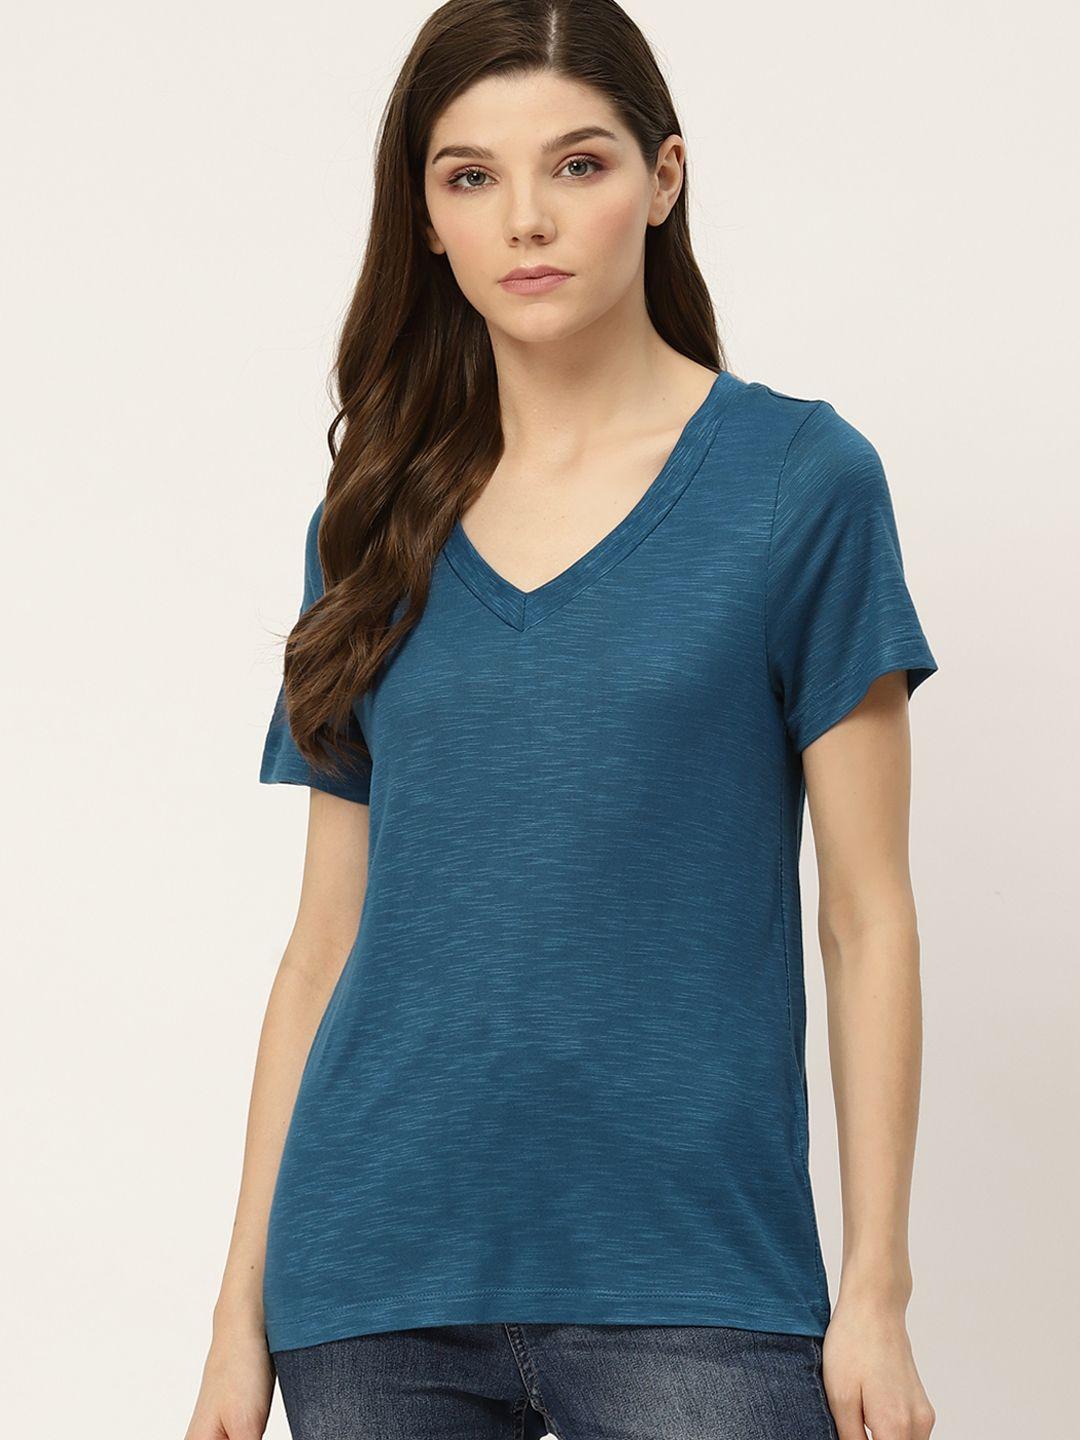 ether women teal blue solid v-neck t-shirt